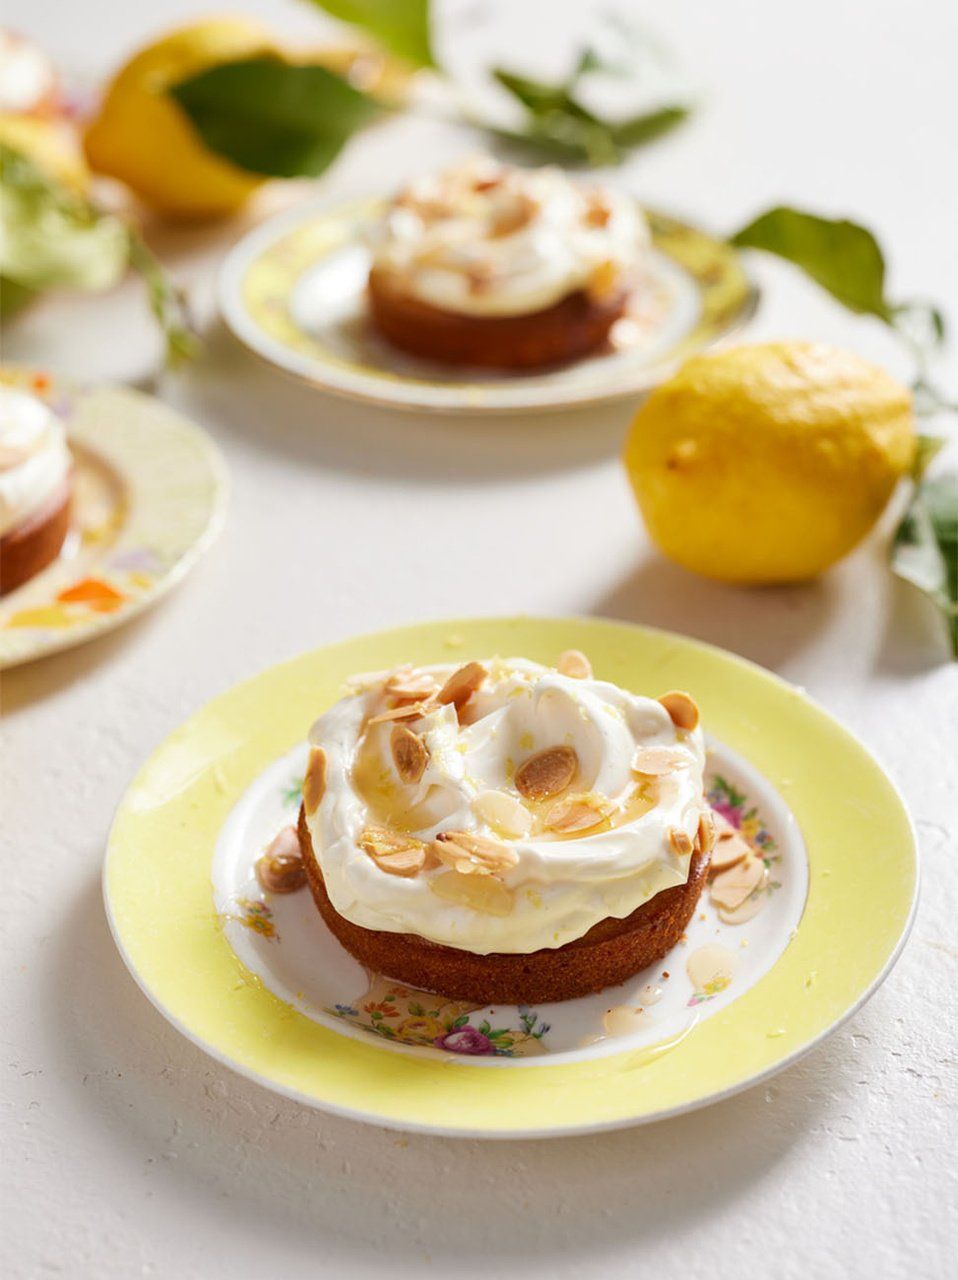 amalfi lemon cake / DELICIOUS BITES